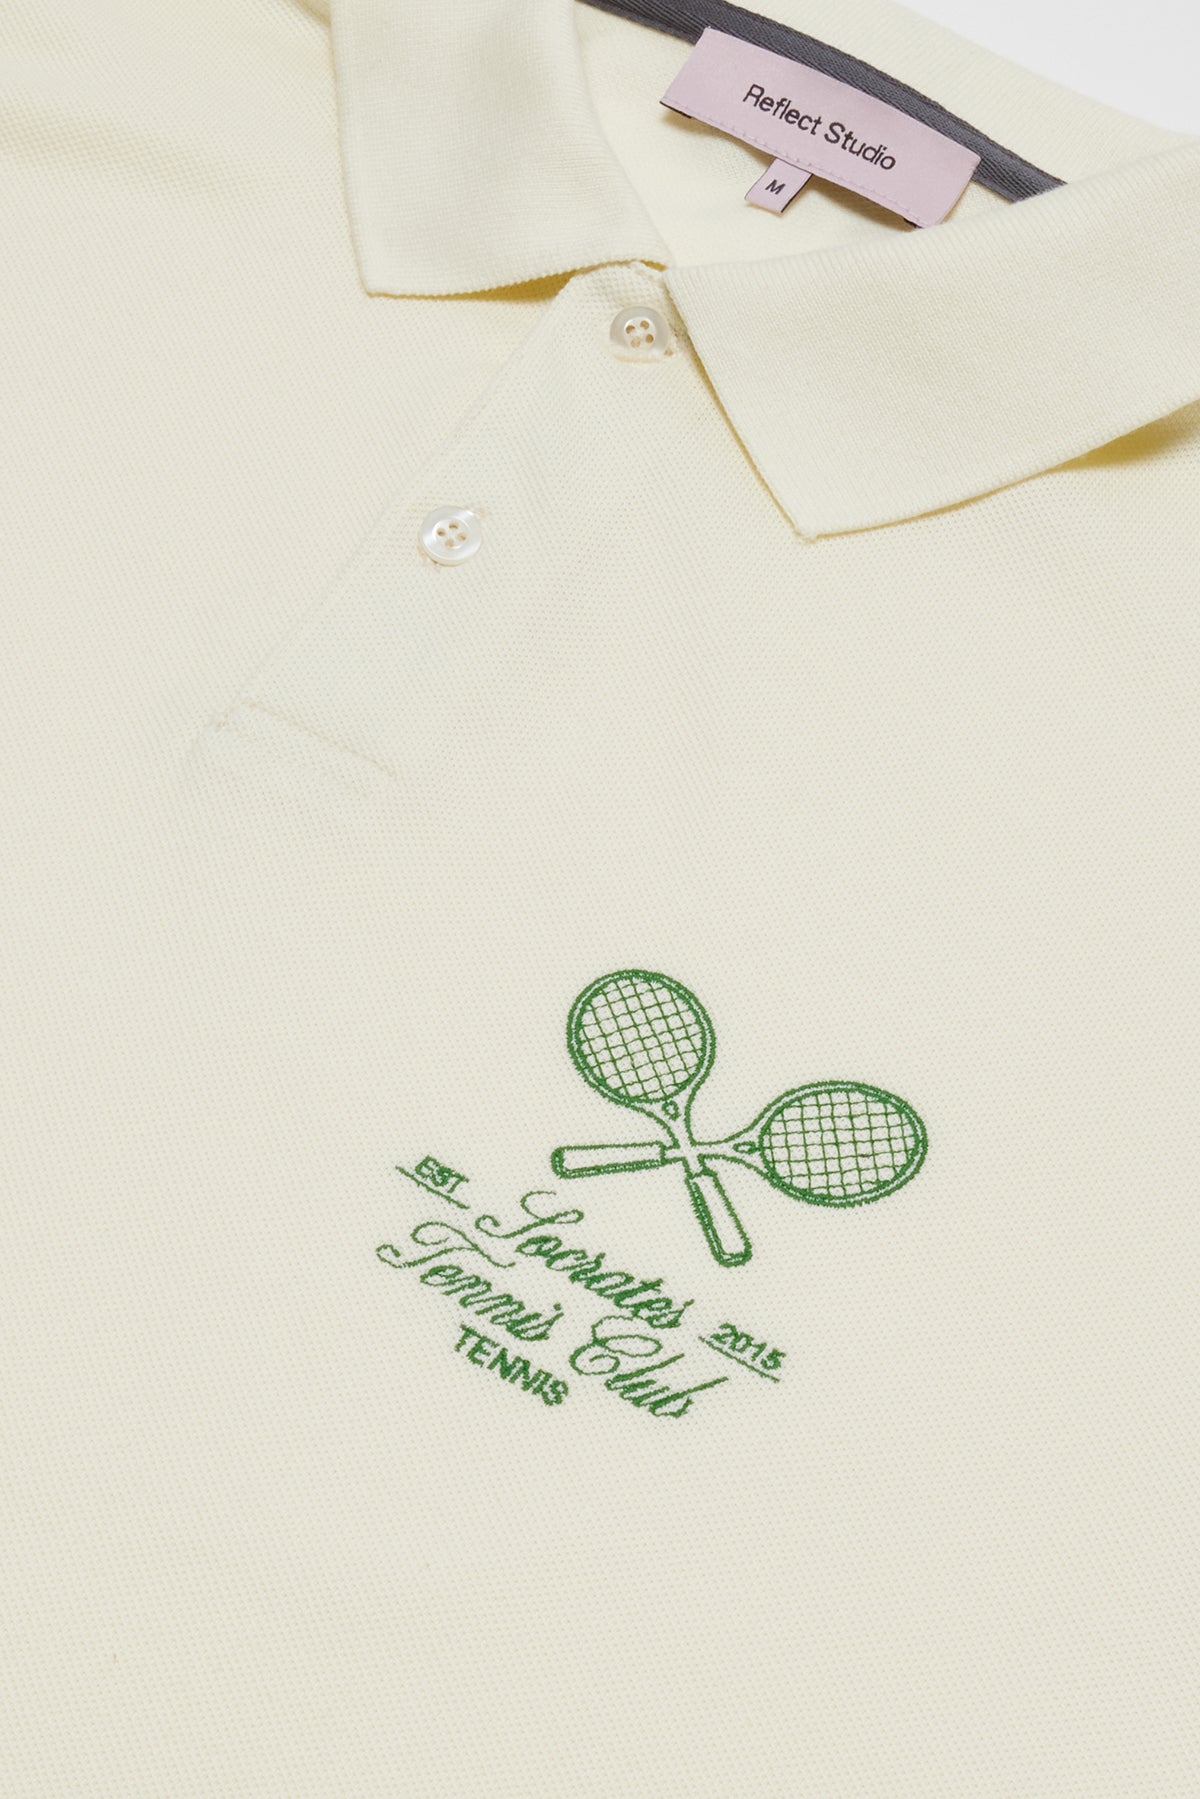 Socrates Tennis Club Polo T-Shirt - Ekru